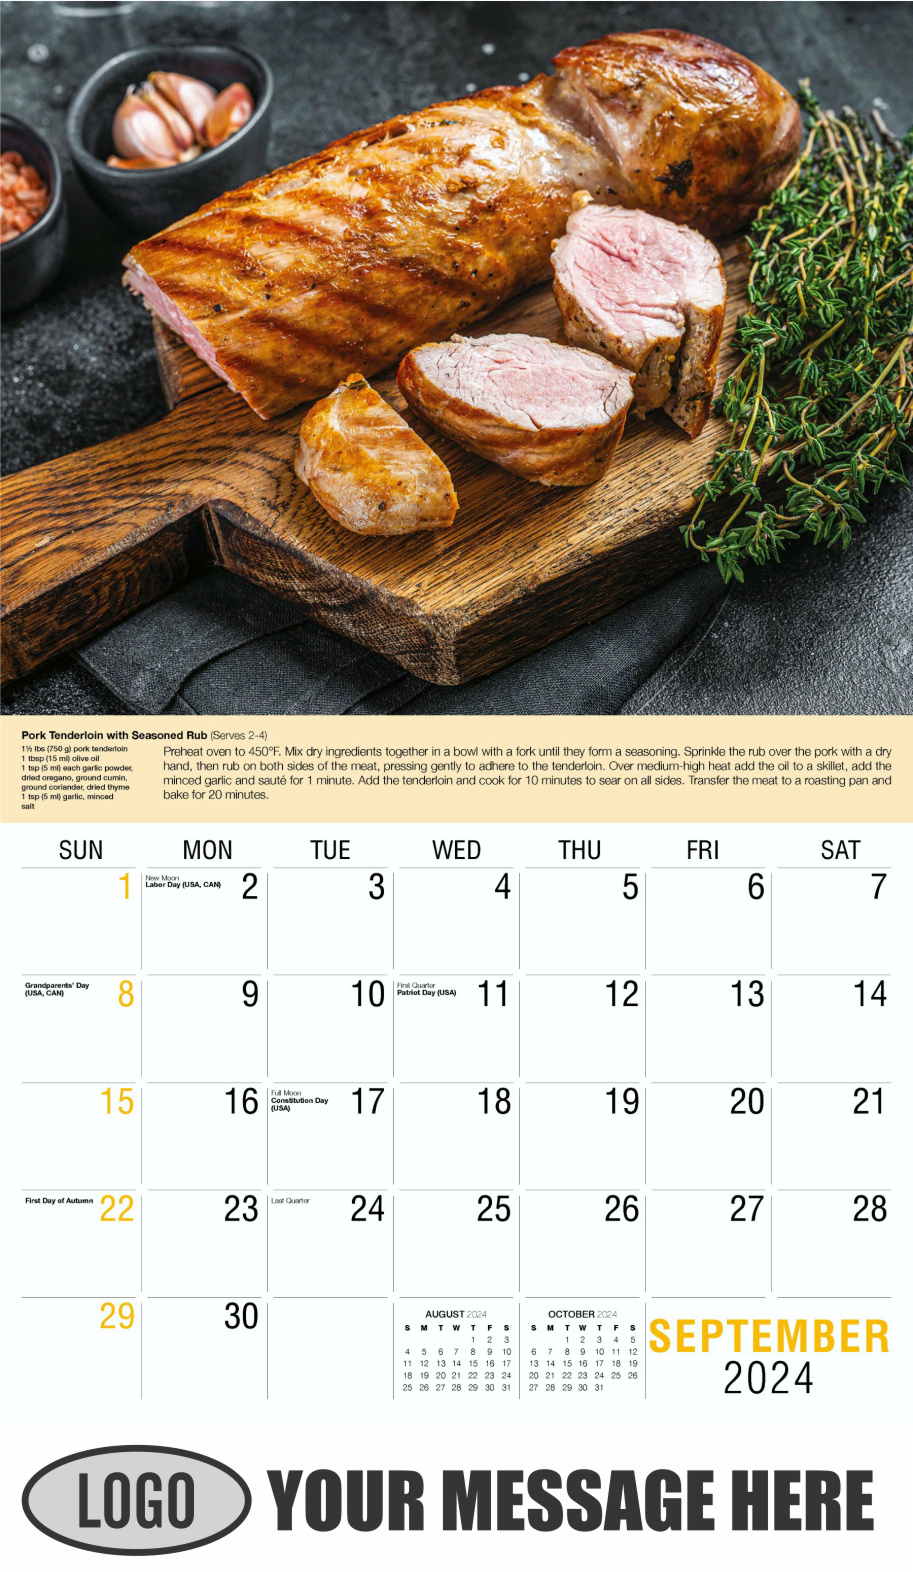 Recipes 2024 Business Promotional Calendar - September